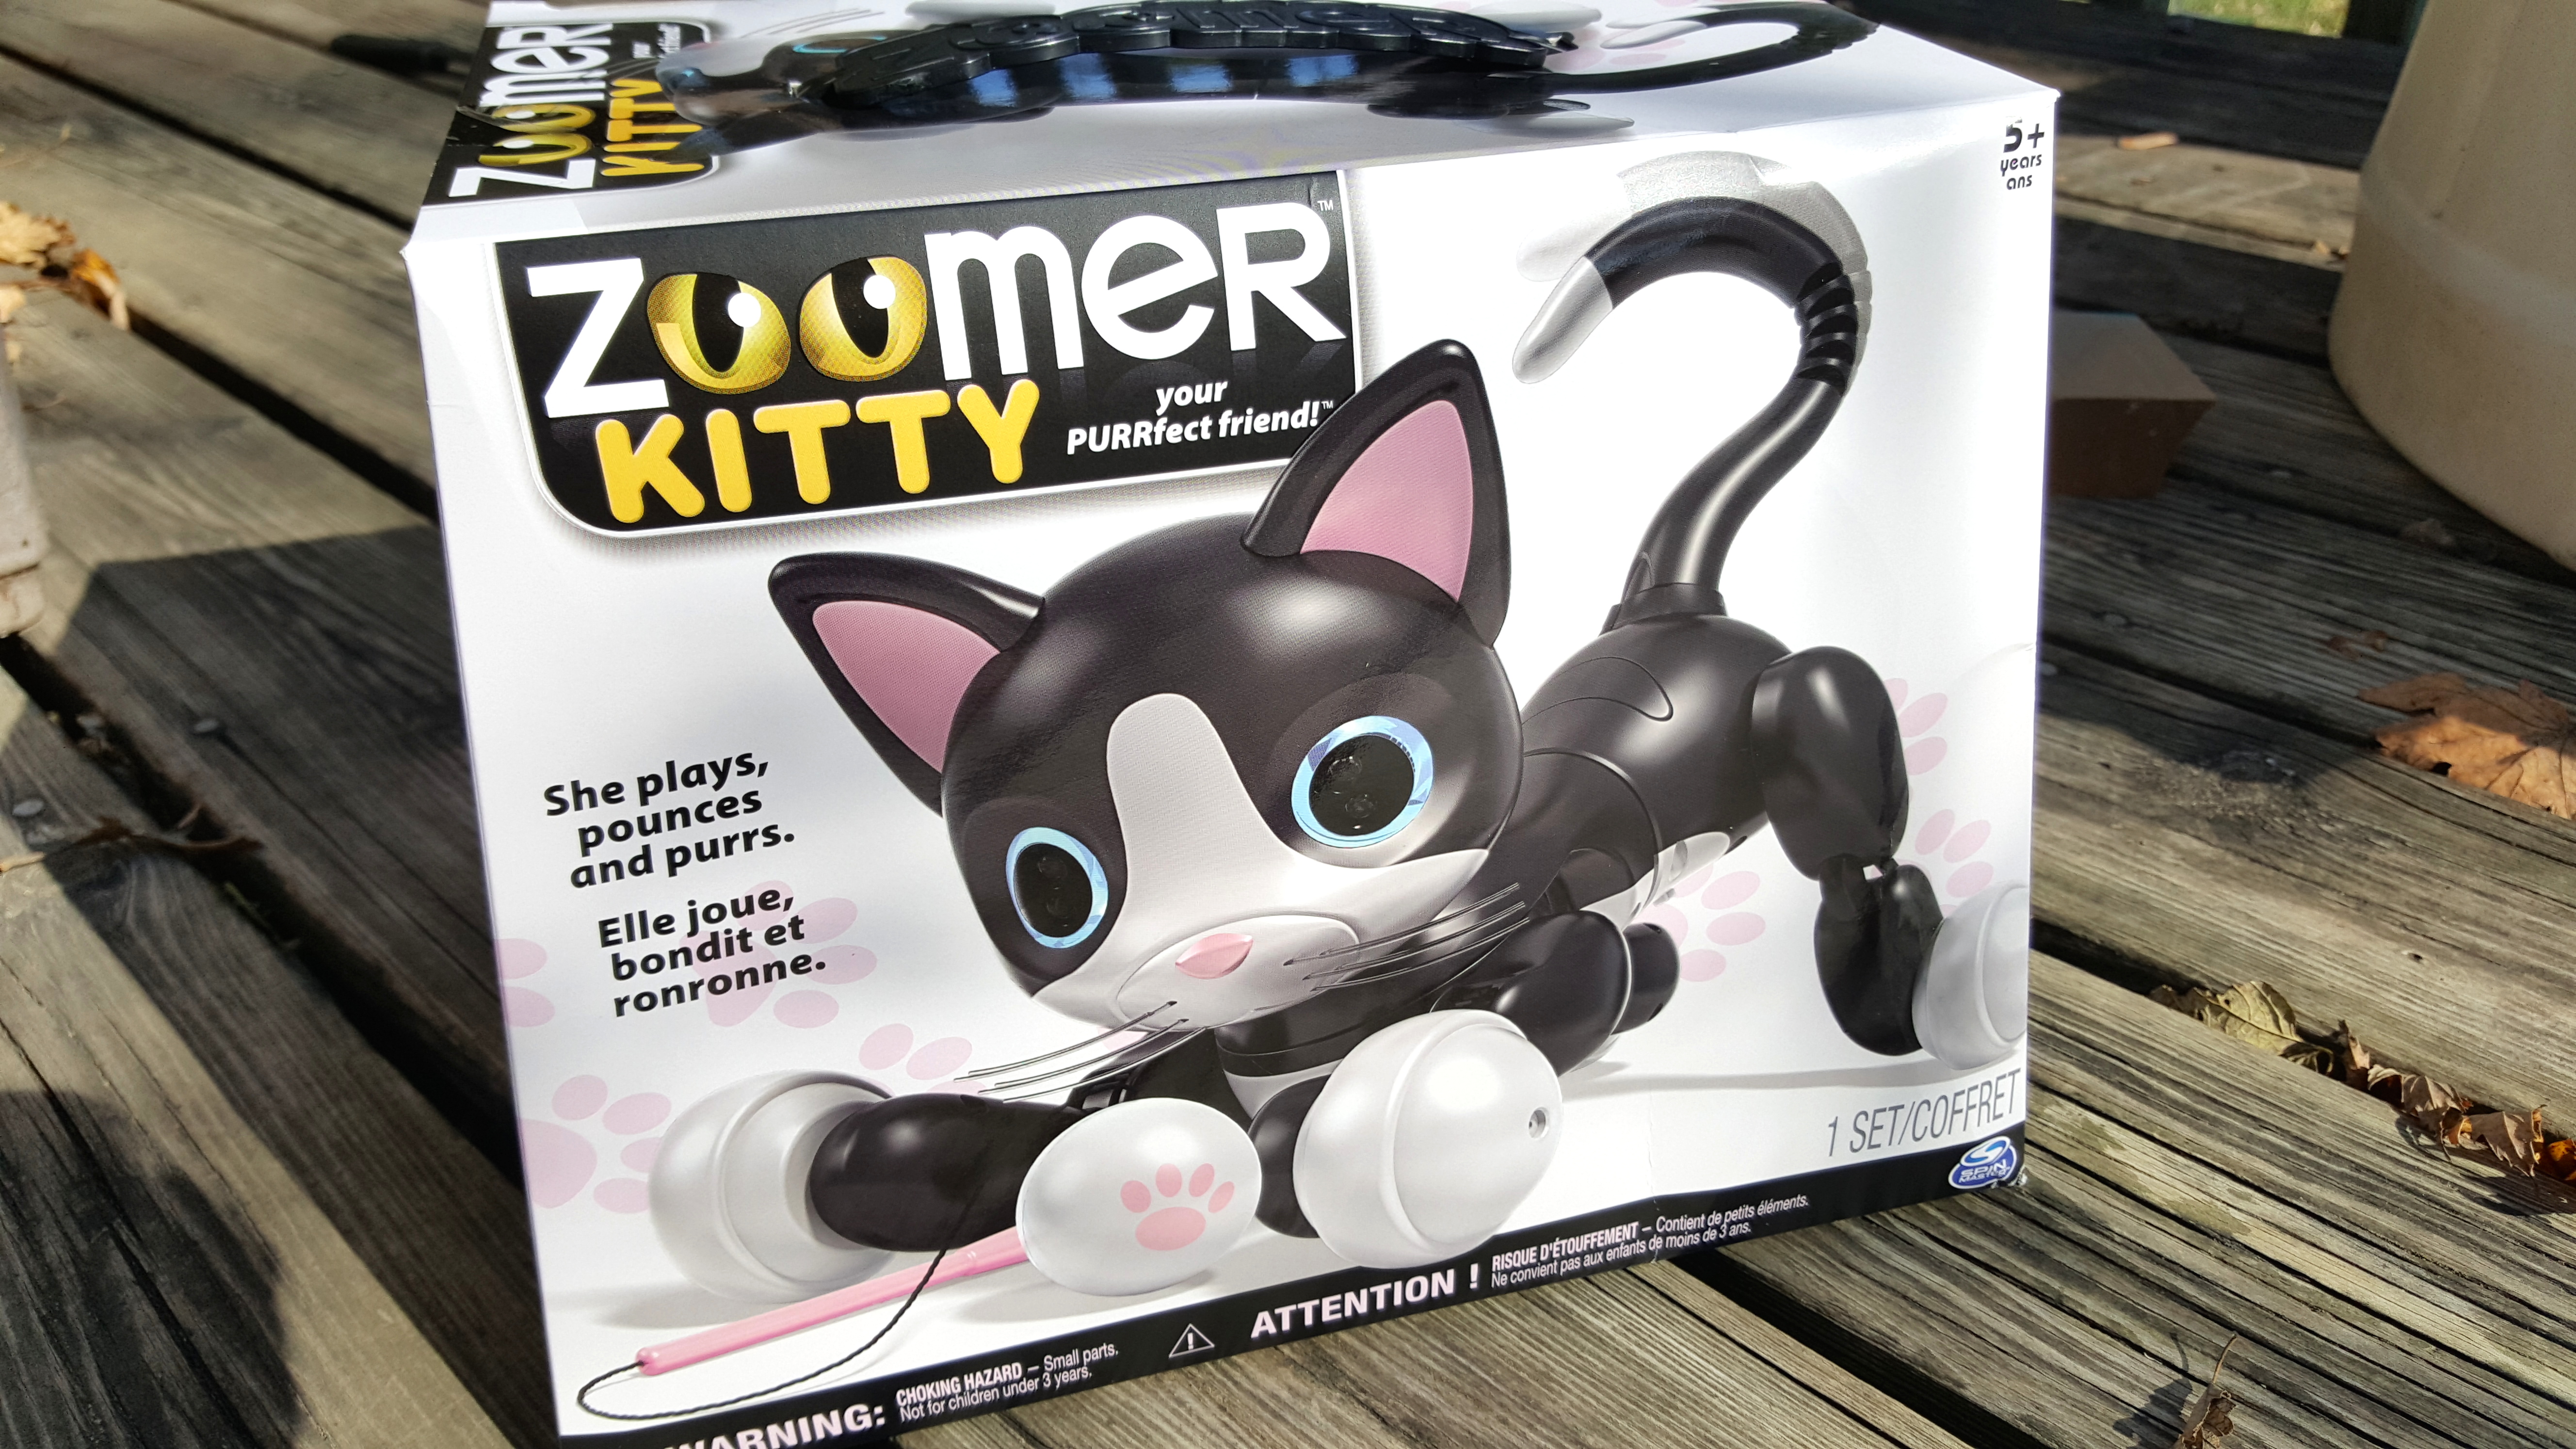 Mindst Nøjagtig jeg er enig Zoomer Kitty Holiday STEM Gift Guide Review